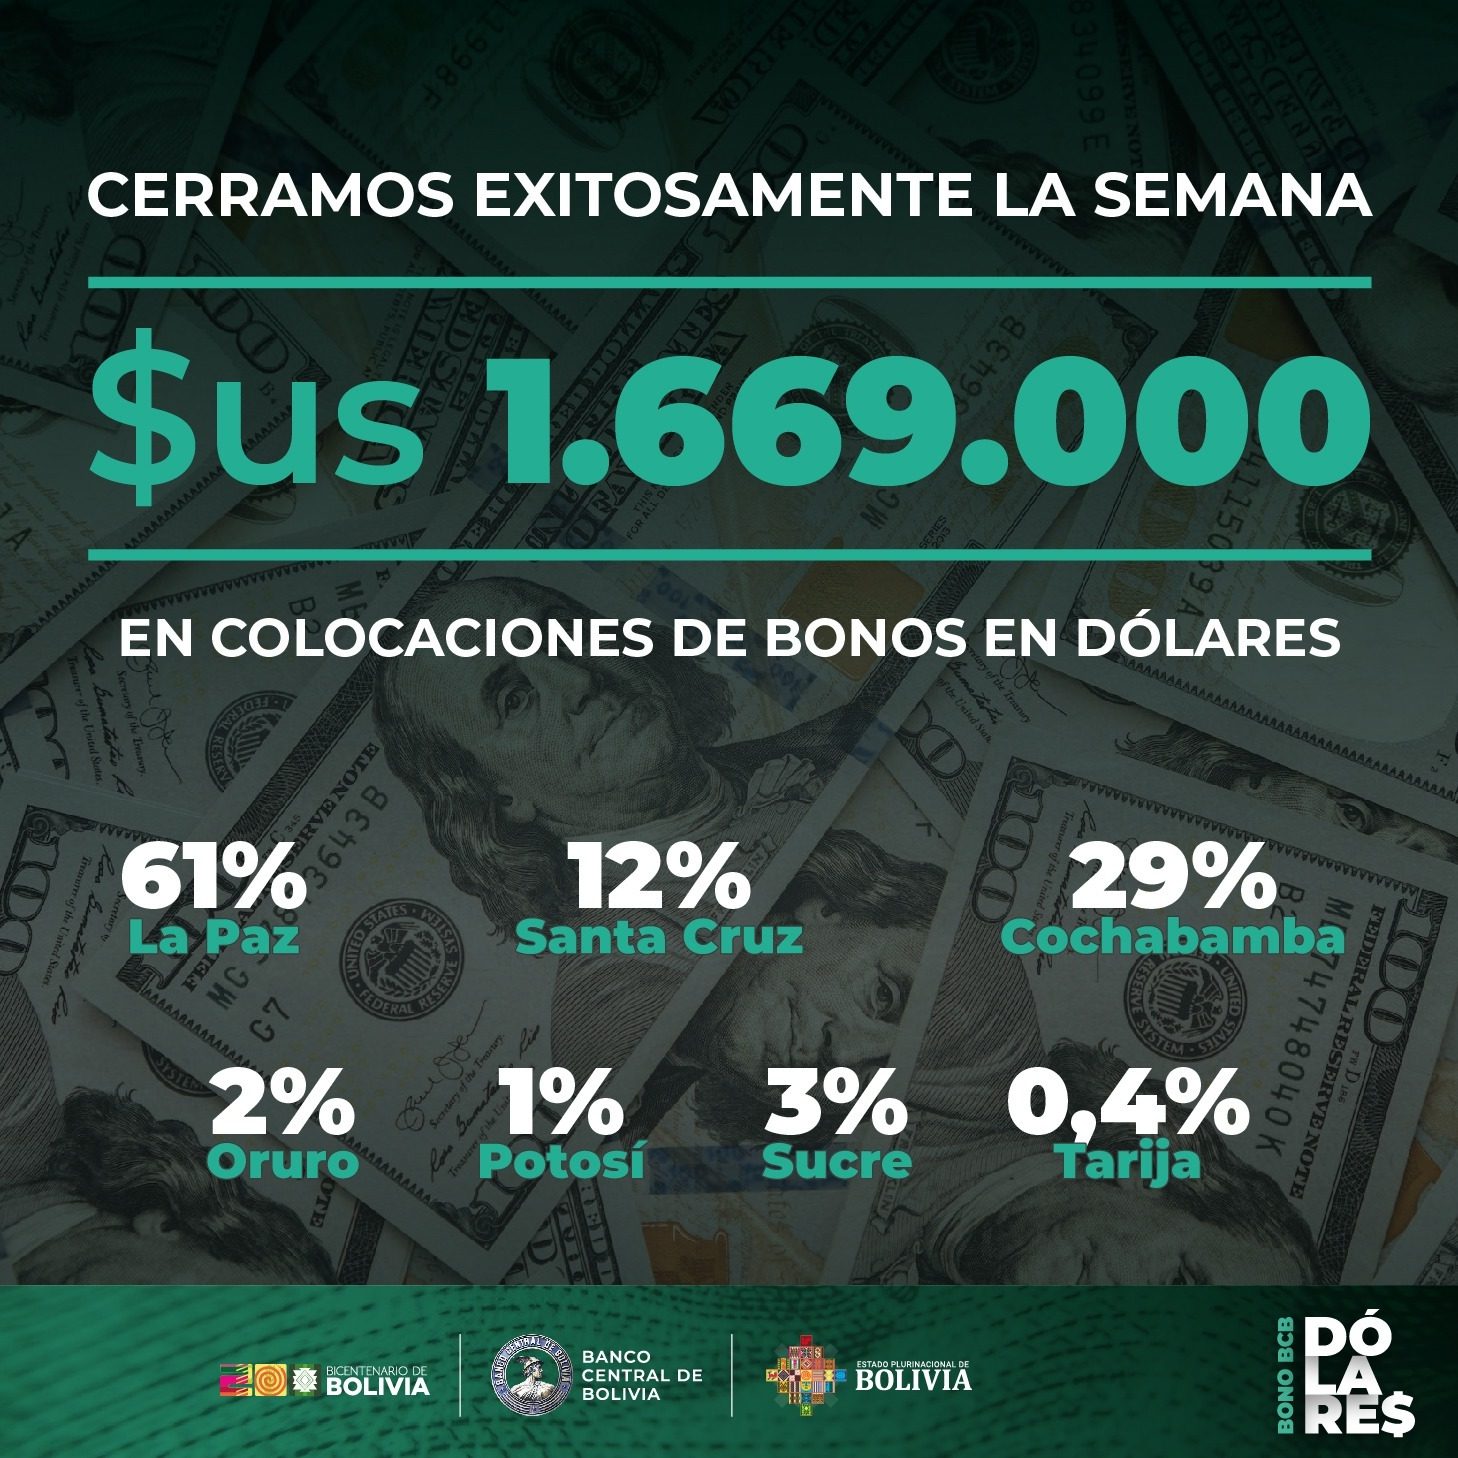 El Bono BCB en Dólares del Banco Central de Bolivia (BCB) triunfa en su primera semana de colocación